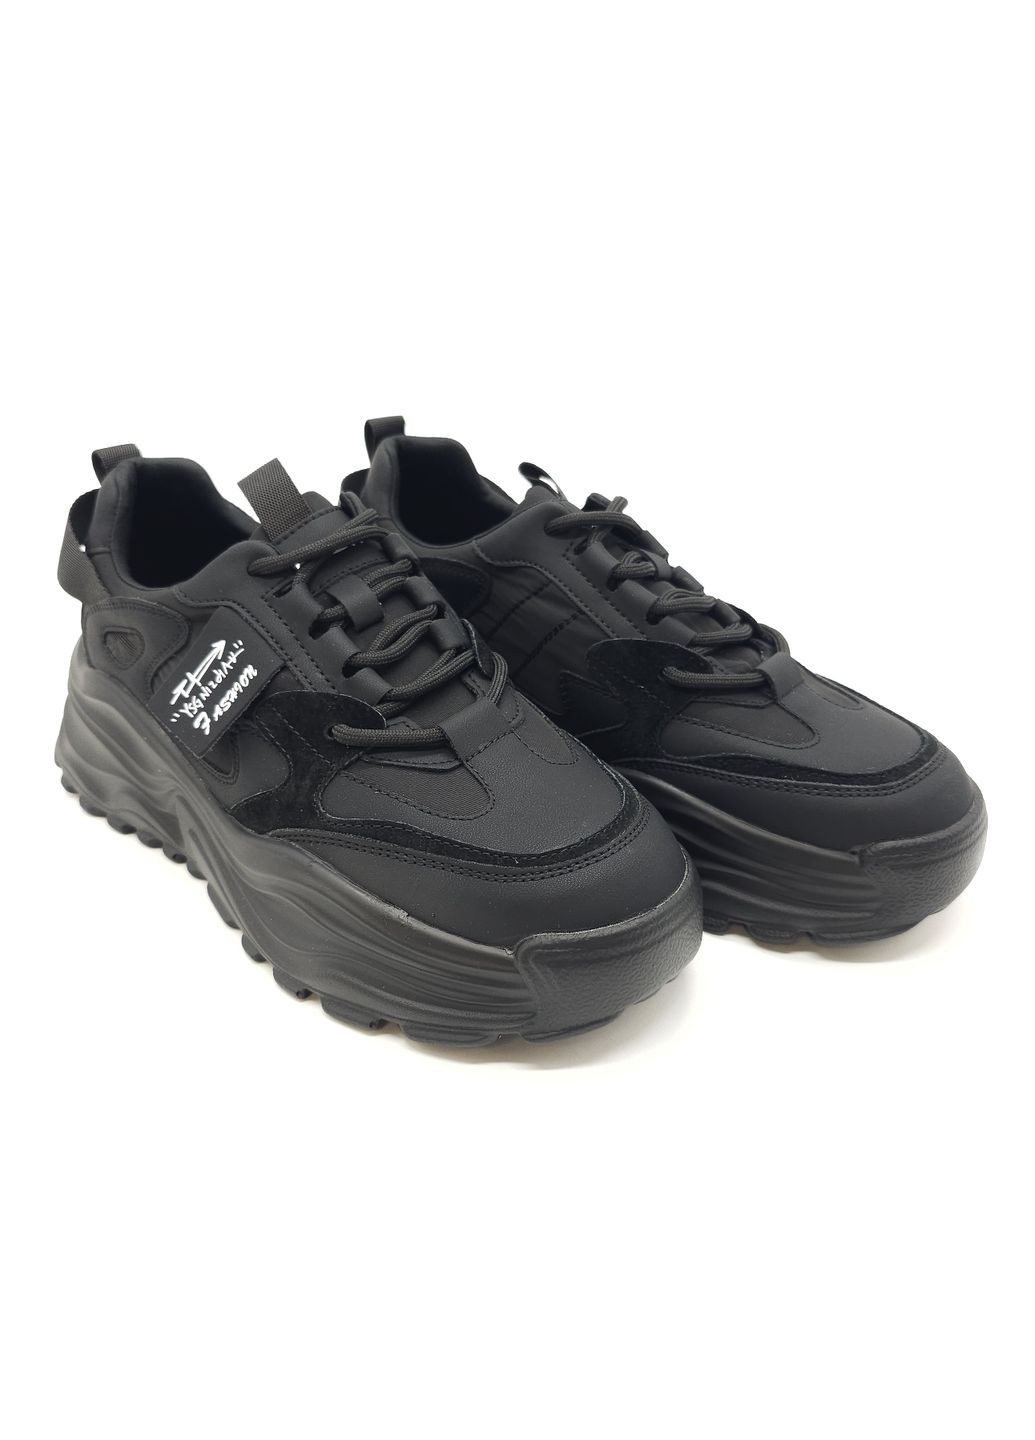 Черные всесезонные женские кроссовки черные кожаные l-10-29 23 см(р) Lonza